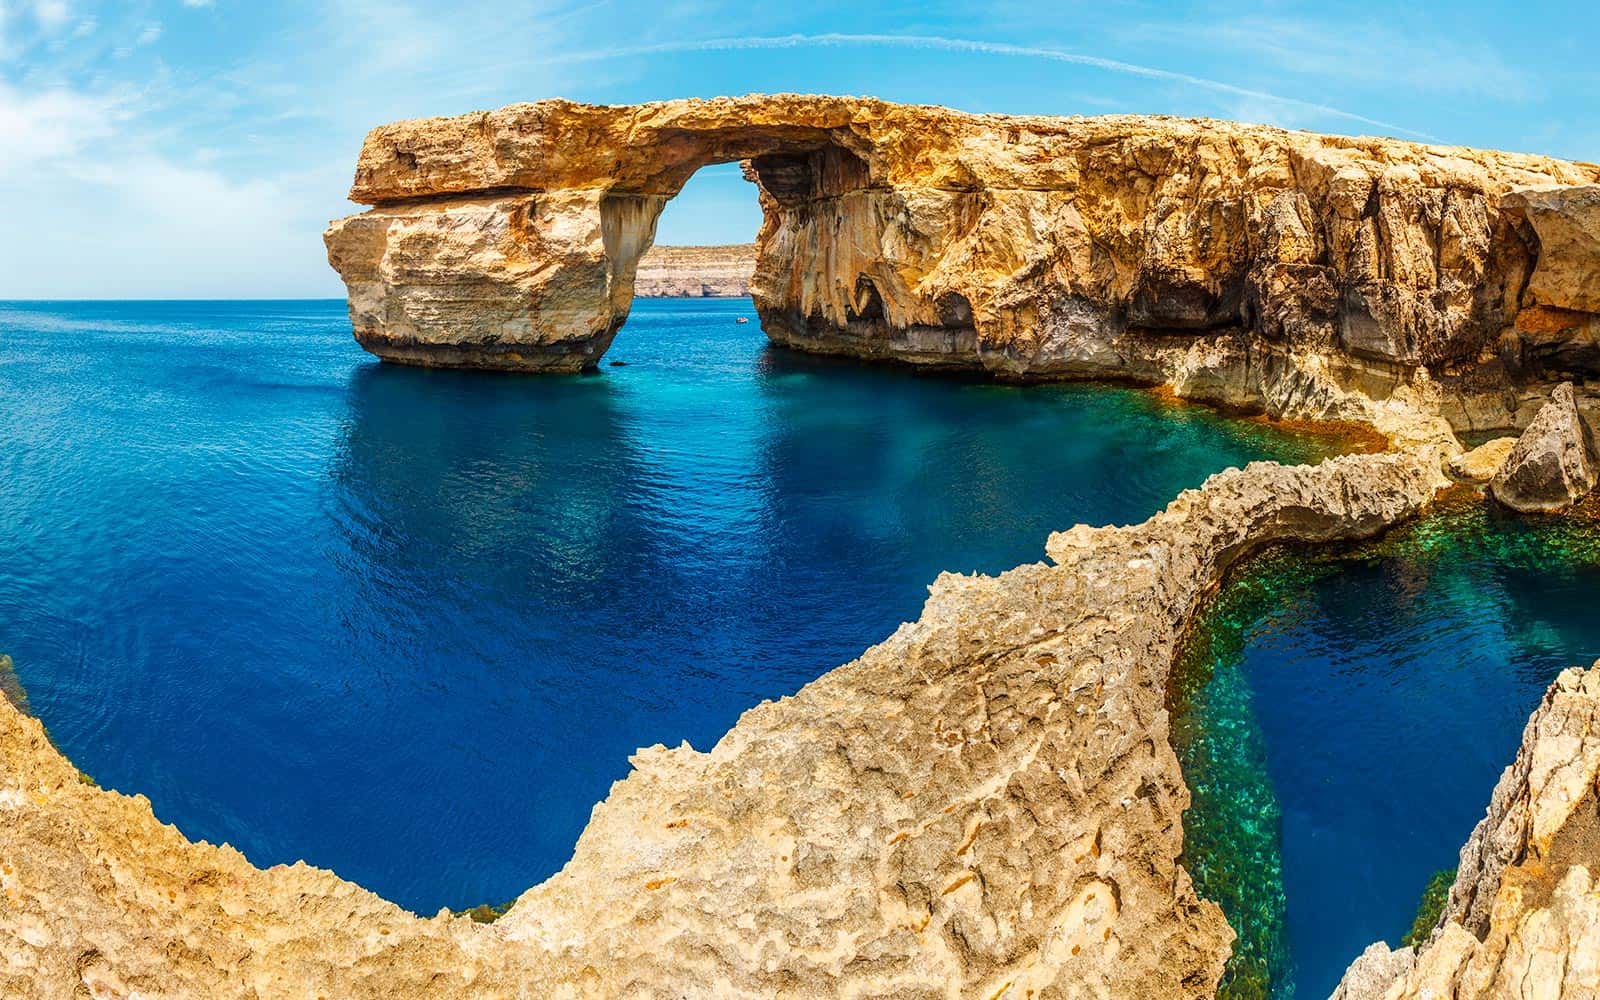 Các nhà đầu tư và chuyên gia lưu trú có thể tham quan những bãi biển tại Malta